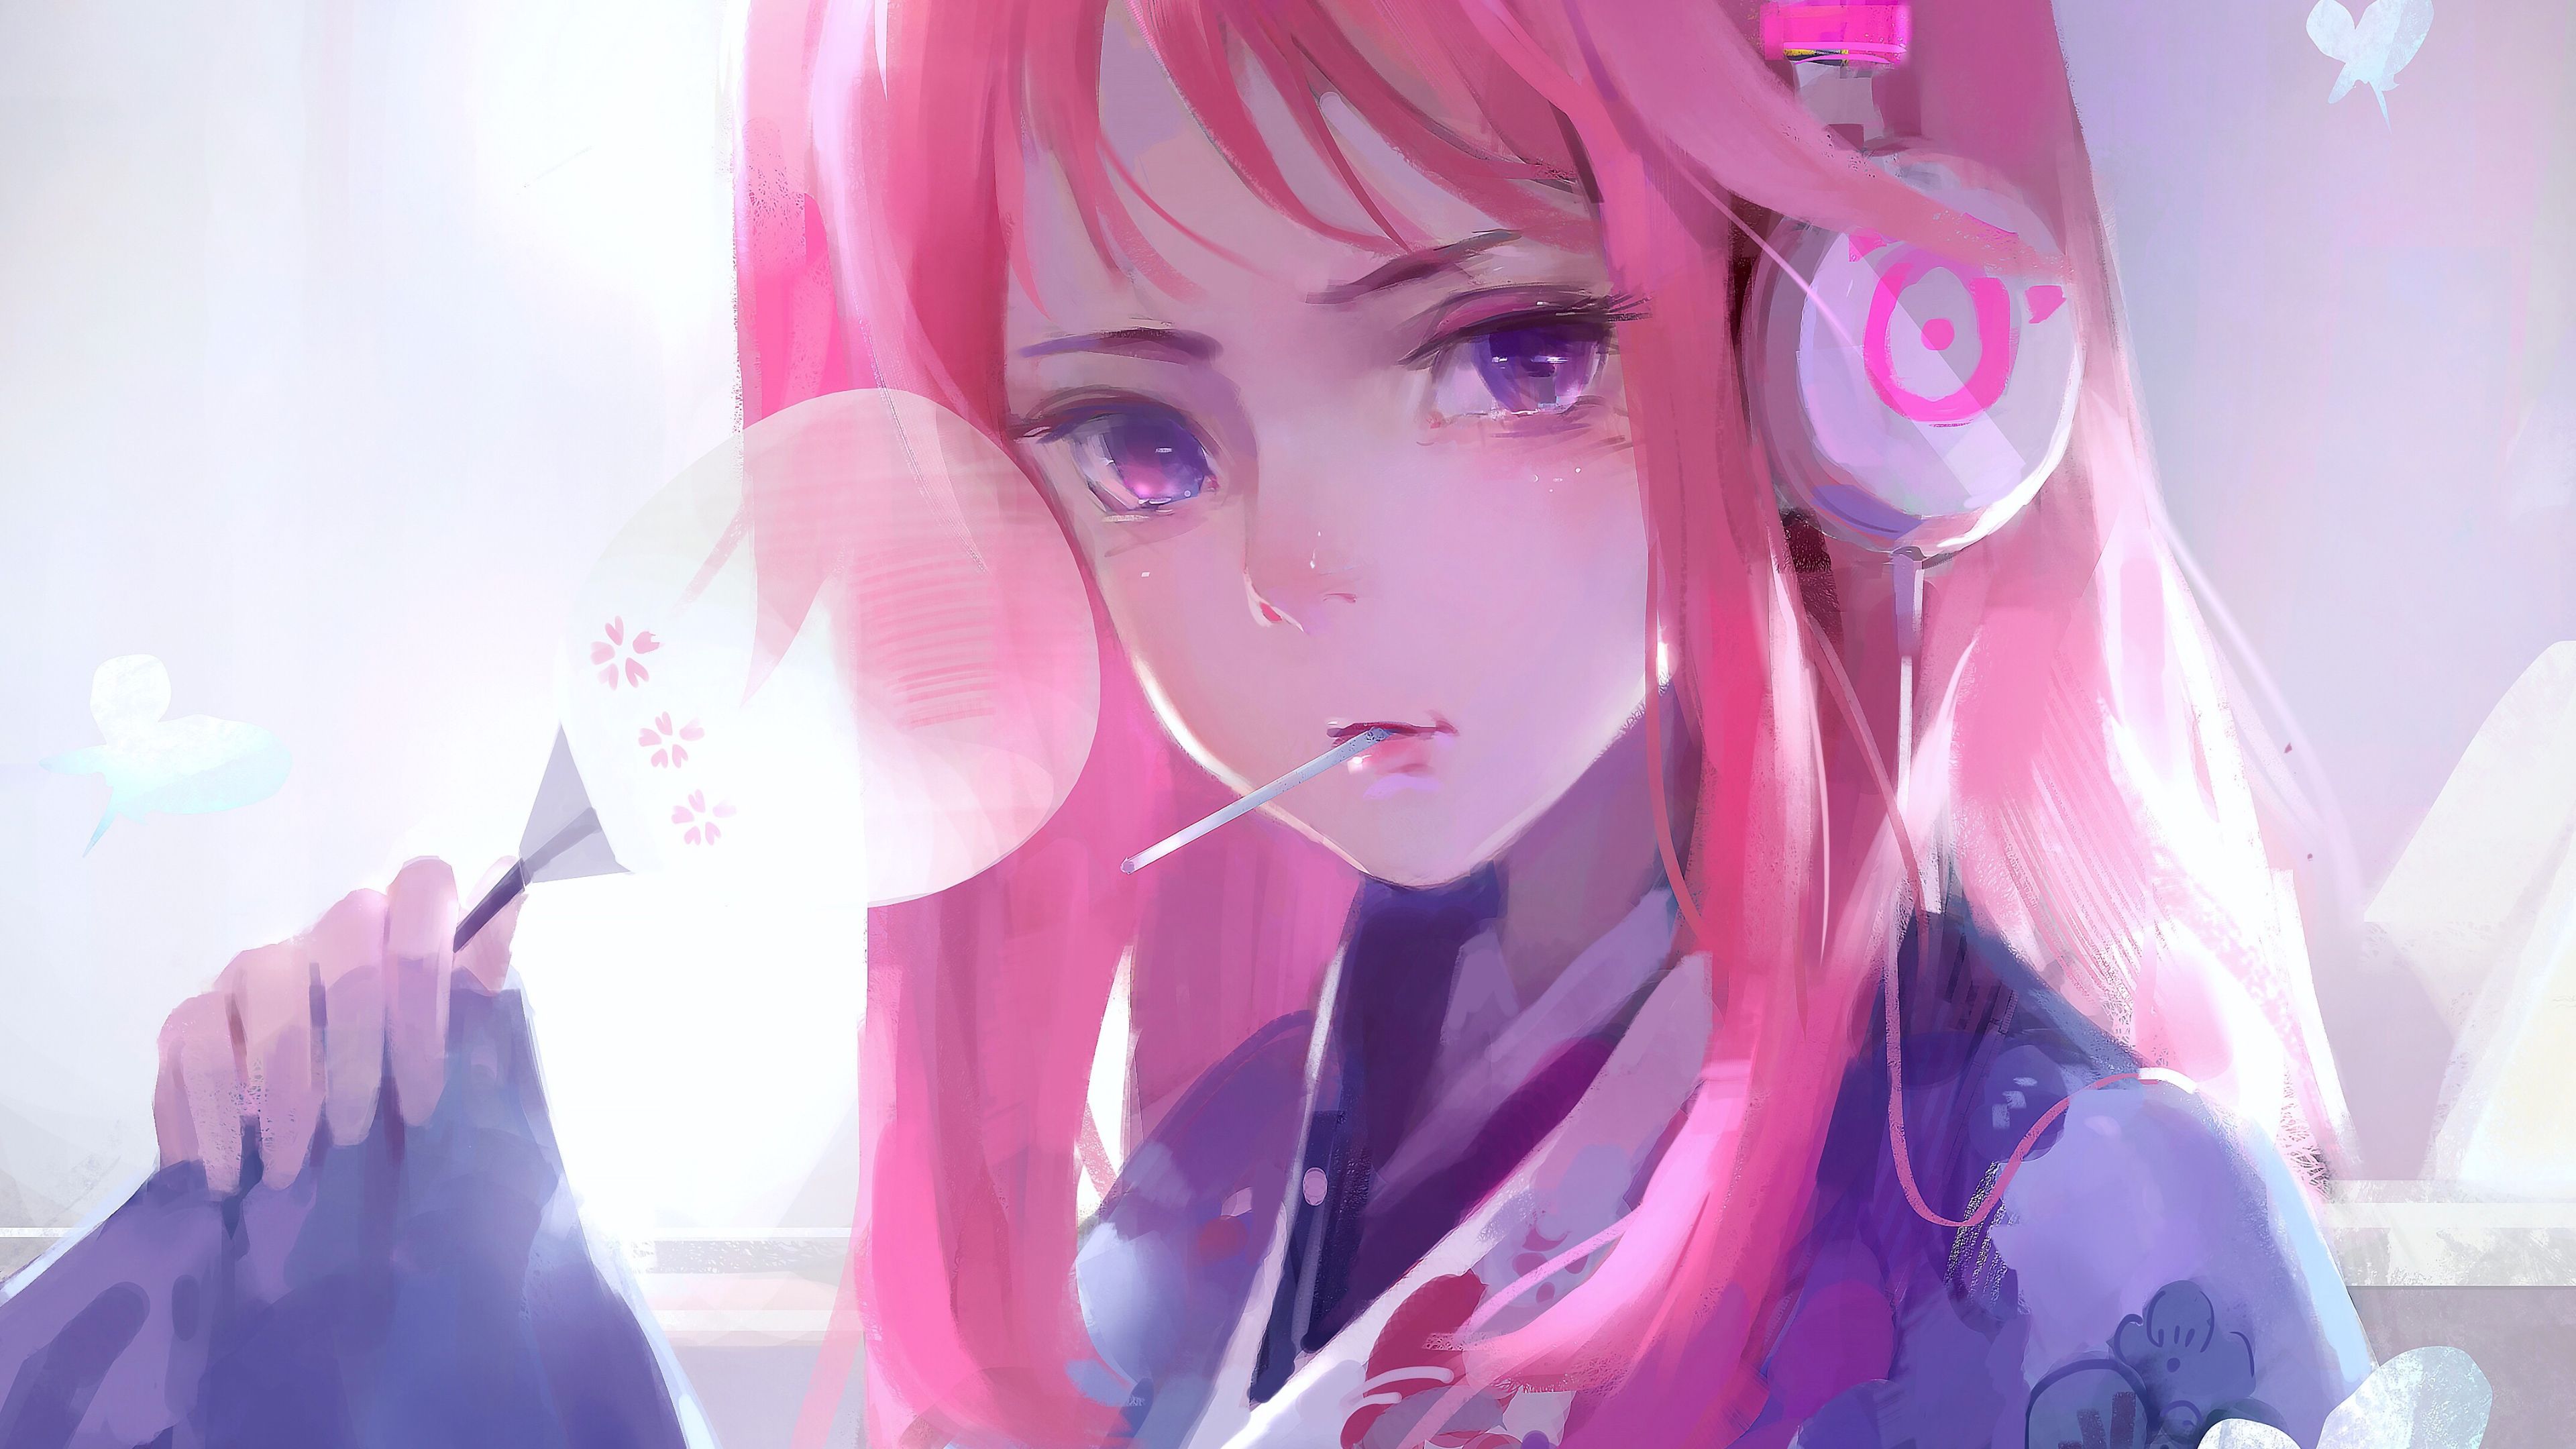 Cute Anime Girl Pink Art 4k, HD Anime, 4k Wallpaper, Image